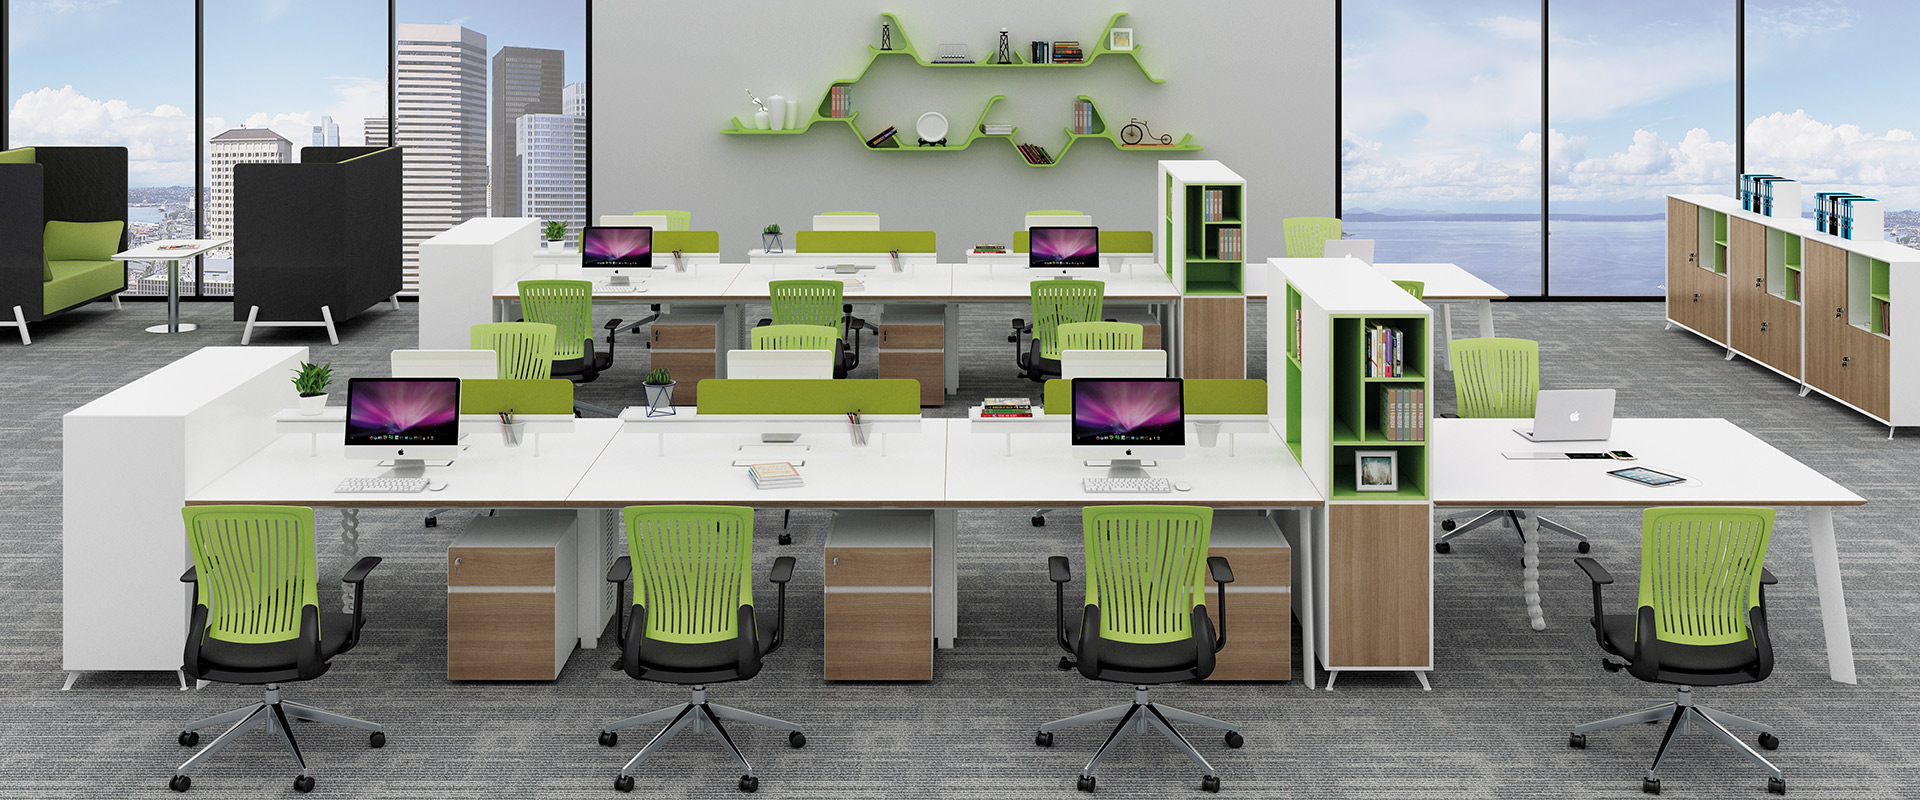 绿色环保理念下的陕西办公家具设计创新